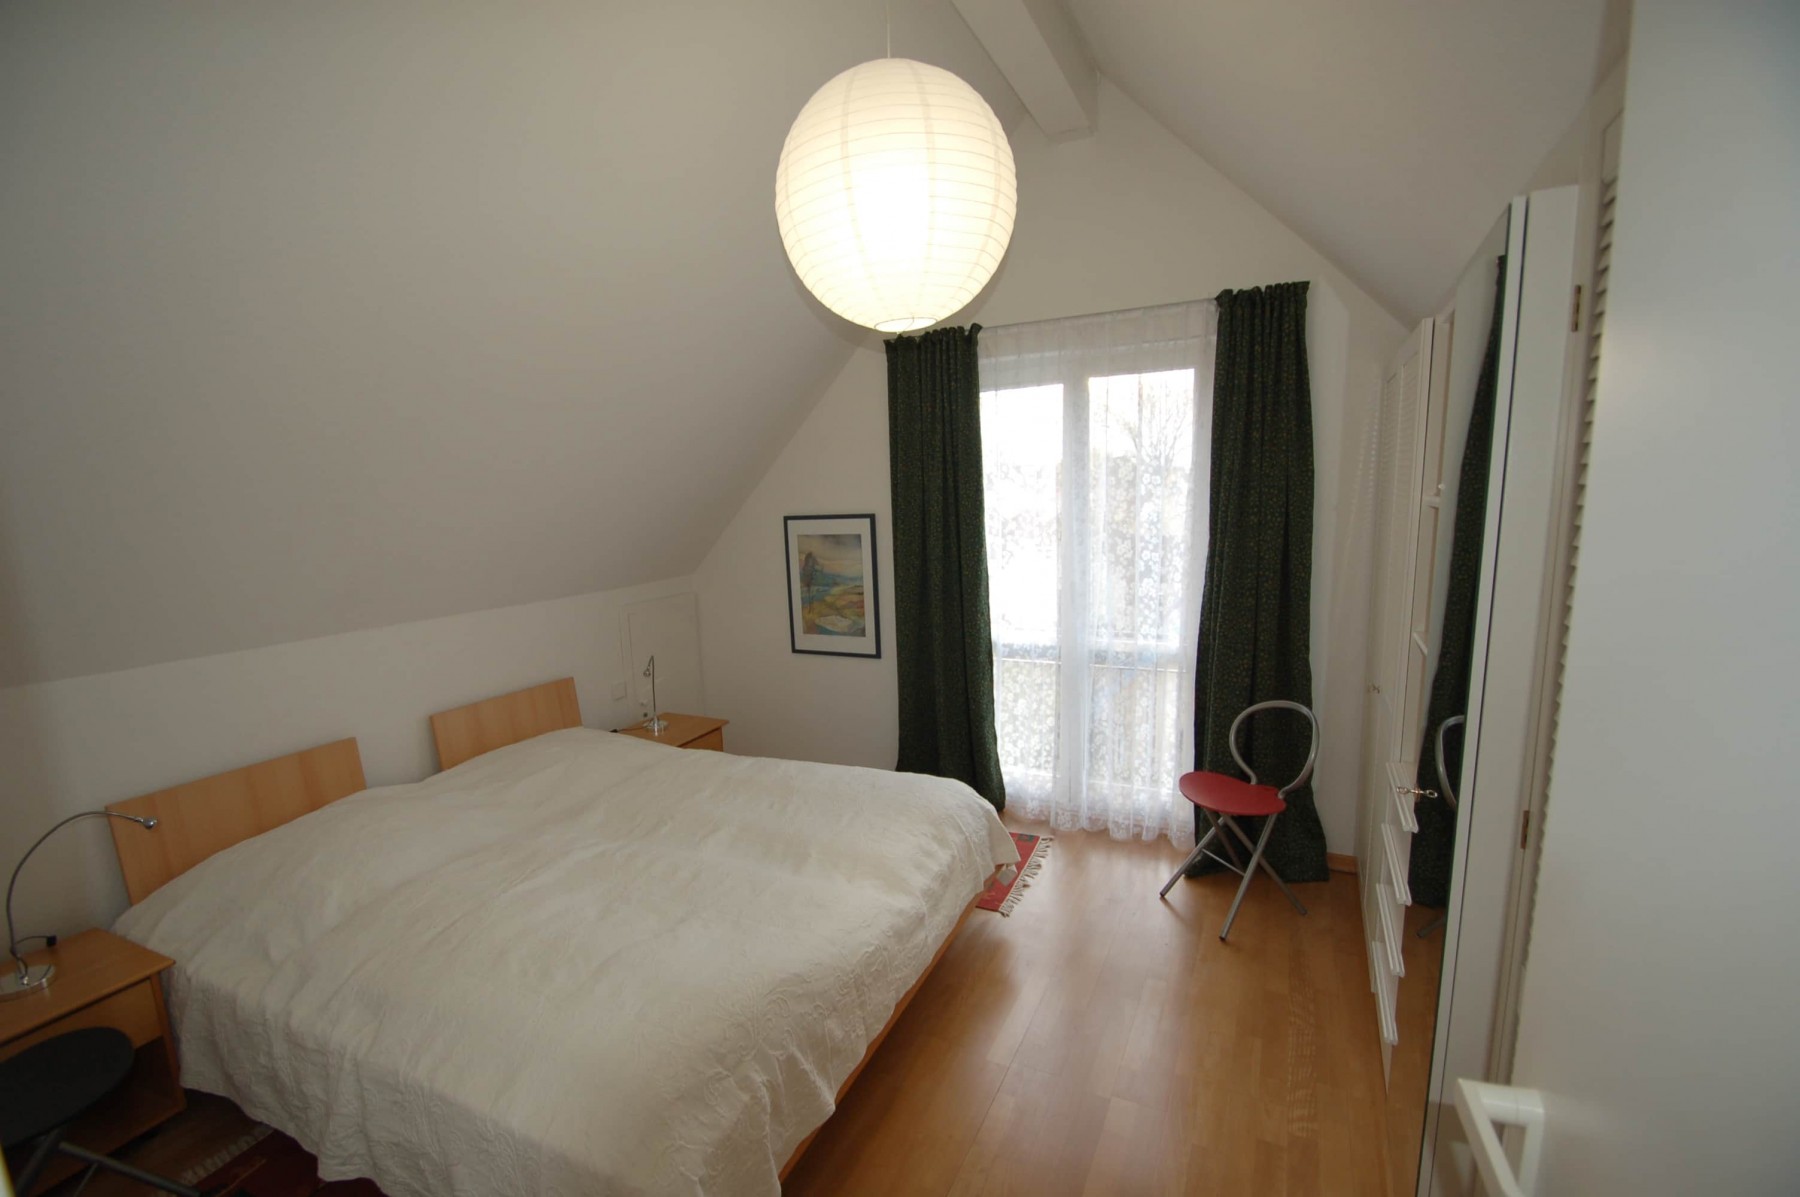 Schlafzimmer oben Betten 180 x 200